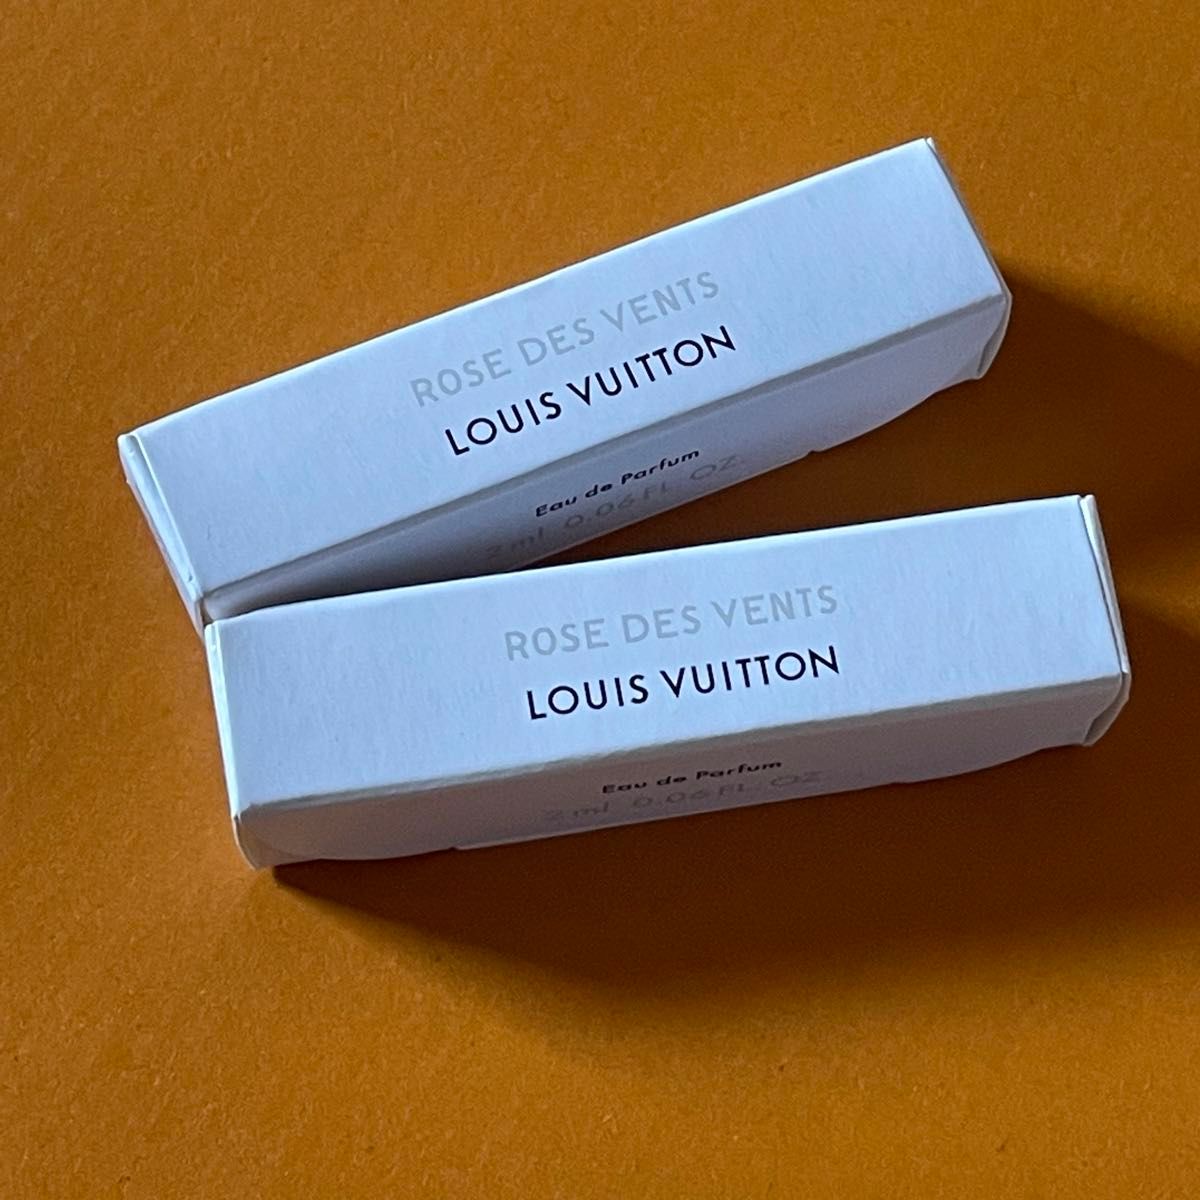 【2本セット】LOUIS VUITTON 香水 ROSE DES VENTS(ローズ･デ･ヴァン) 2ml ミニサイズ ボトル